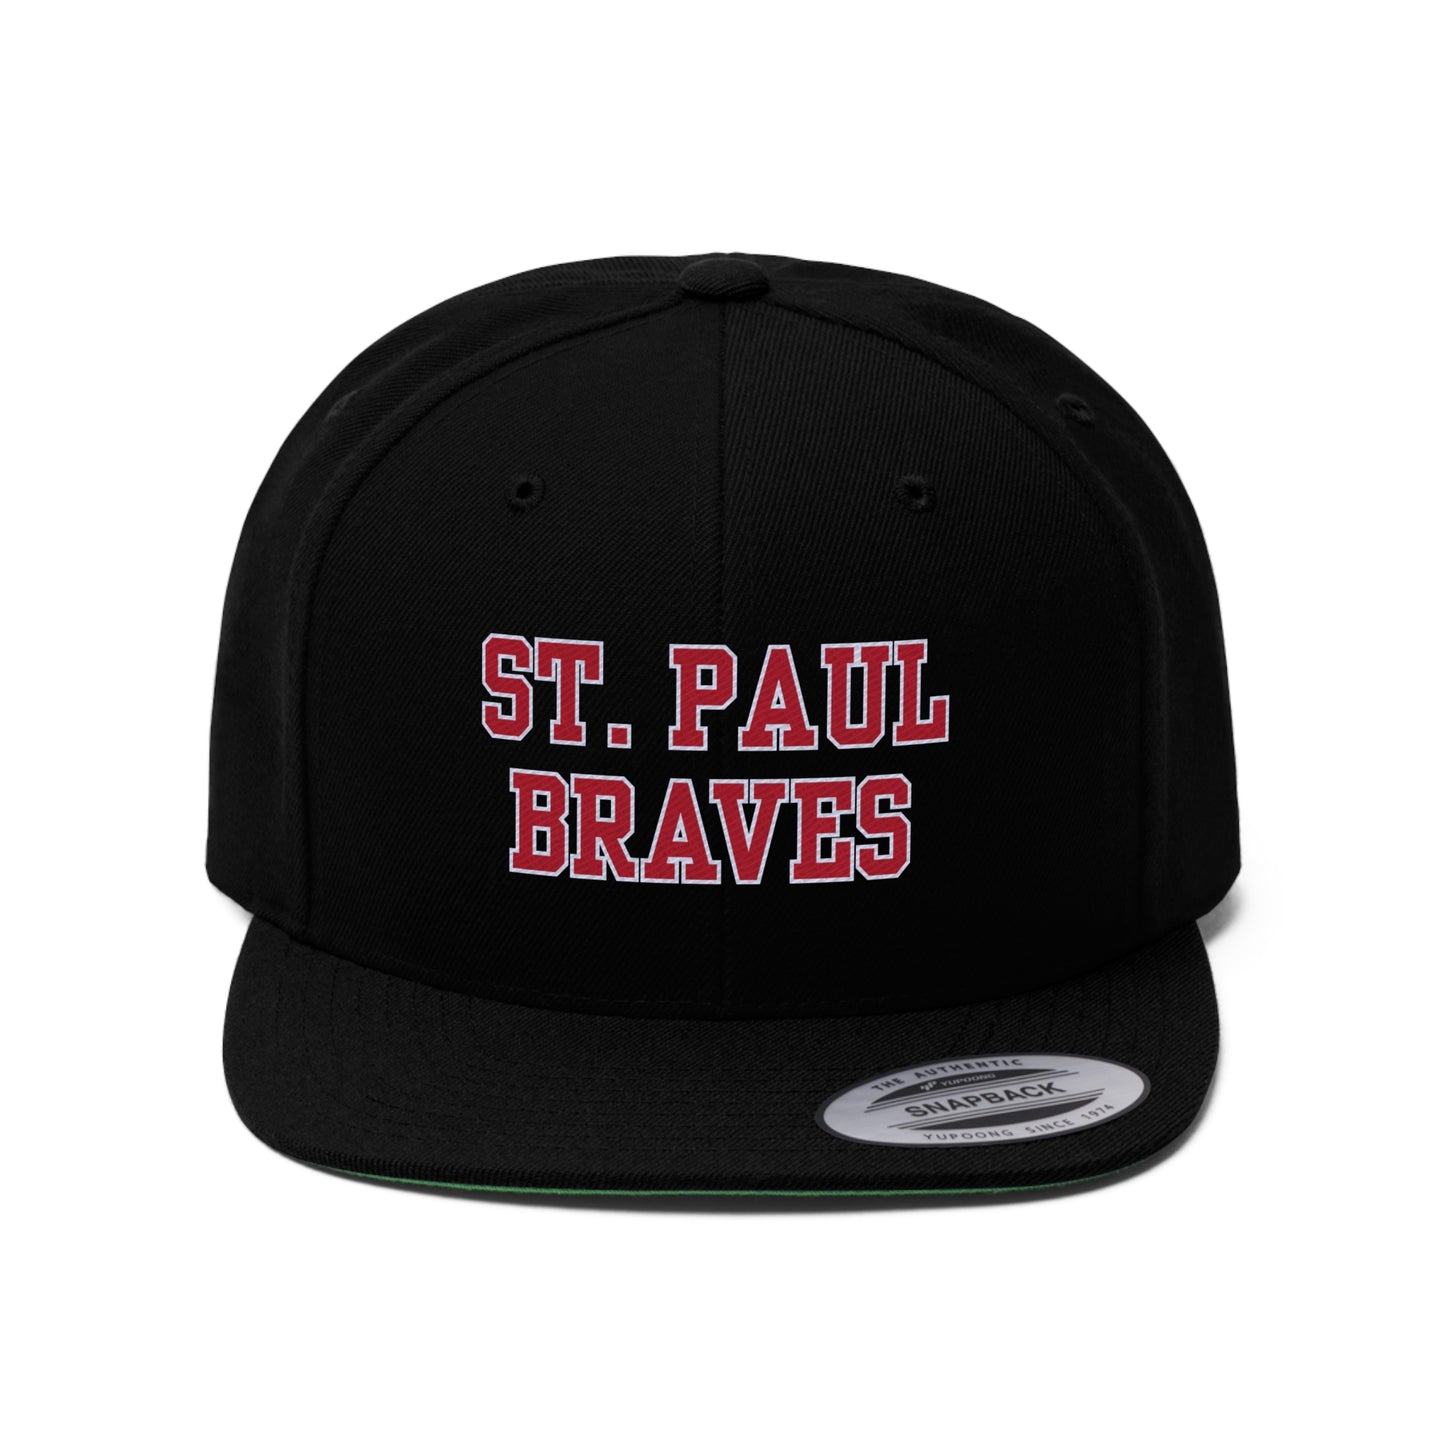 "ST PAUL BRAVES" caps | Unisex Flat Bill Hat | 2 Colors